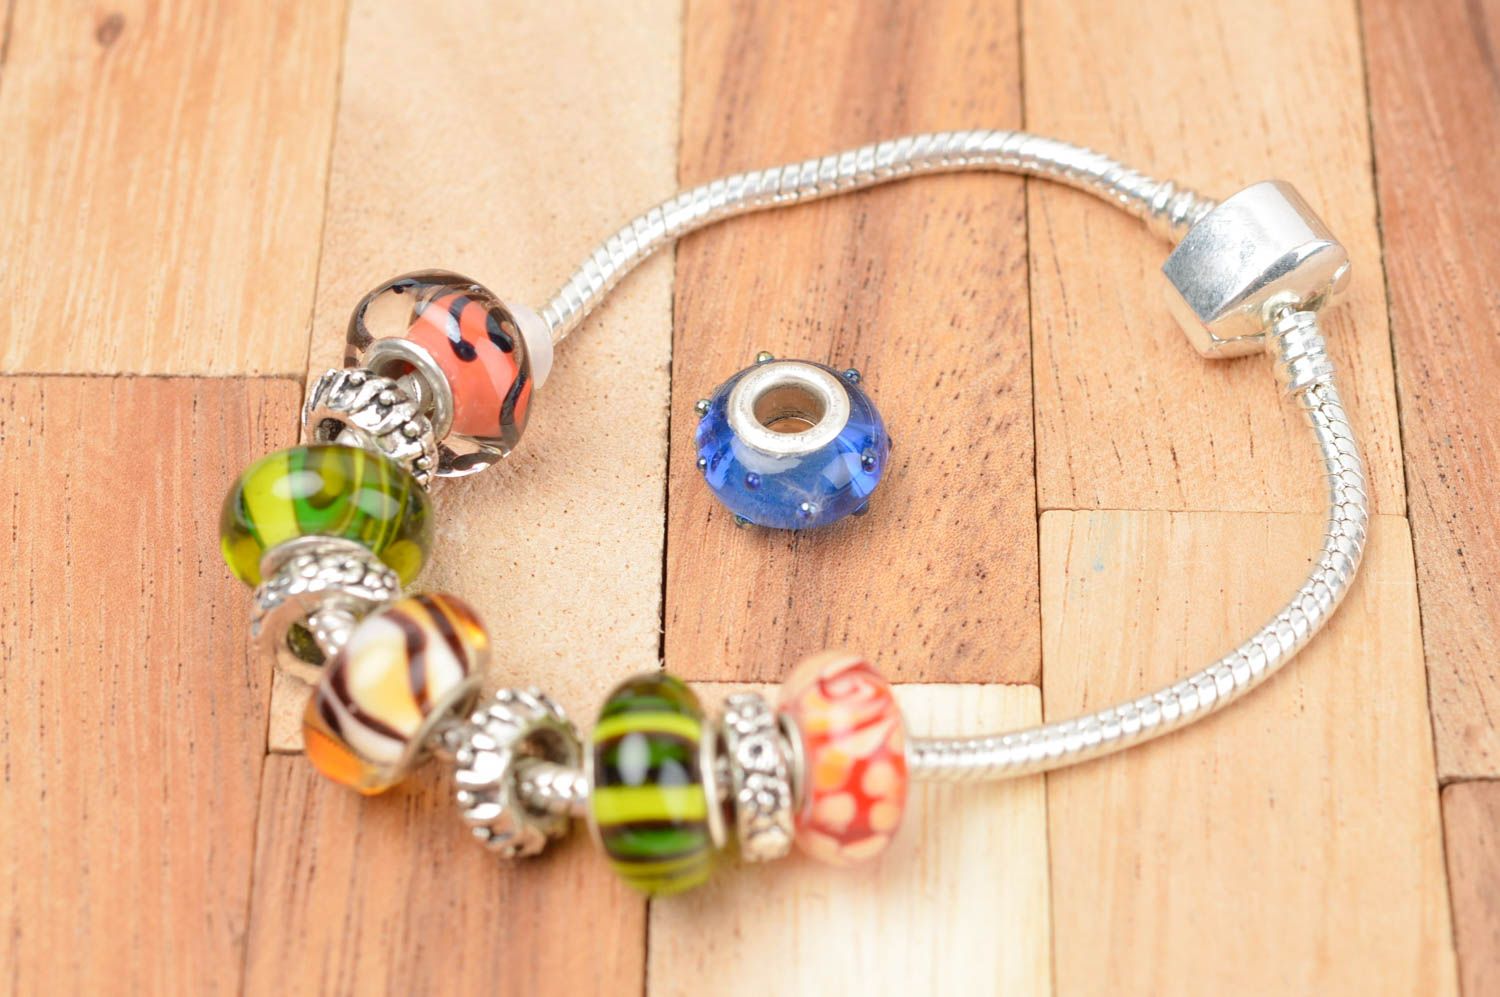 Beautiful handmade bead glass beads craft supplies art materials ideas photo 4